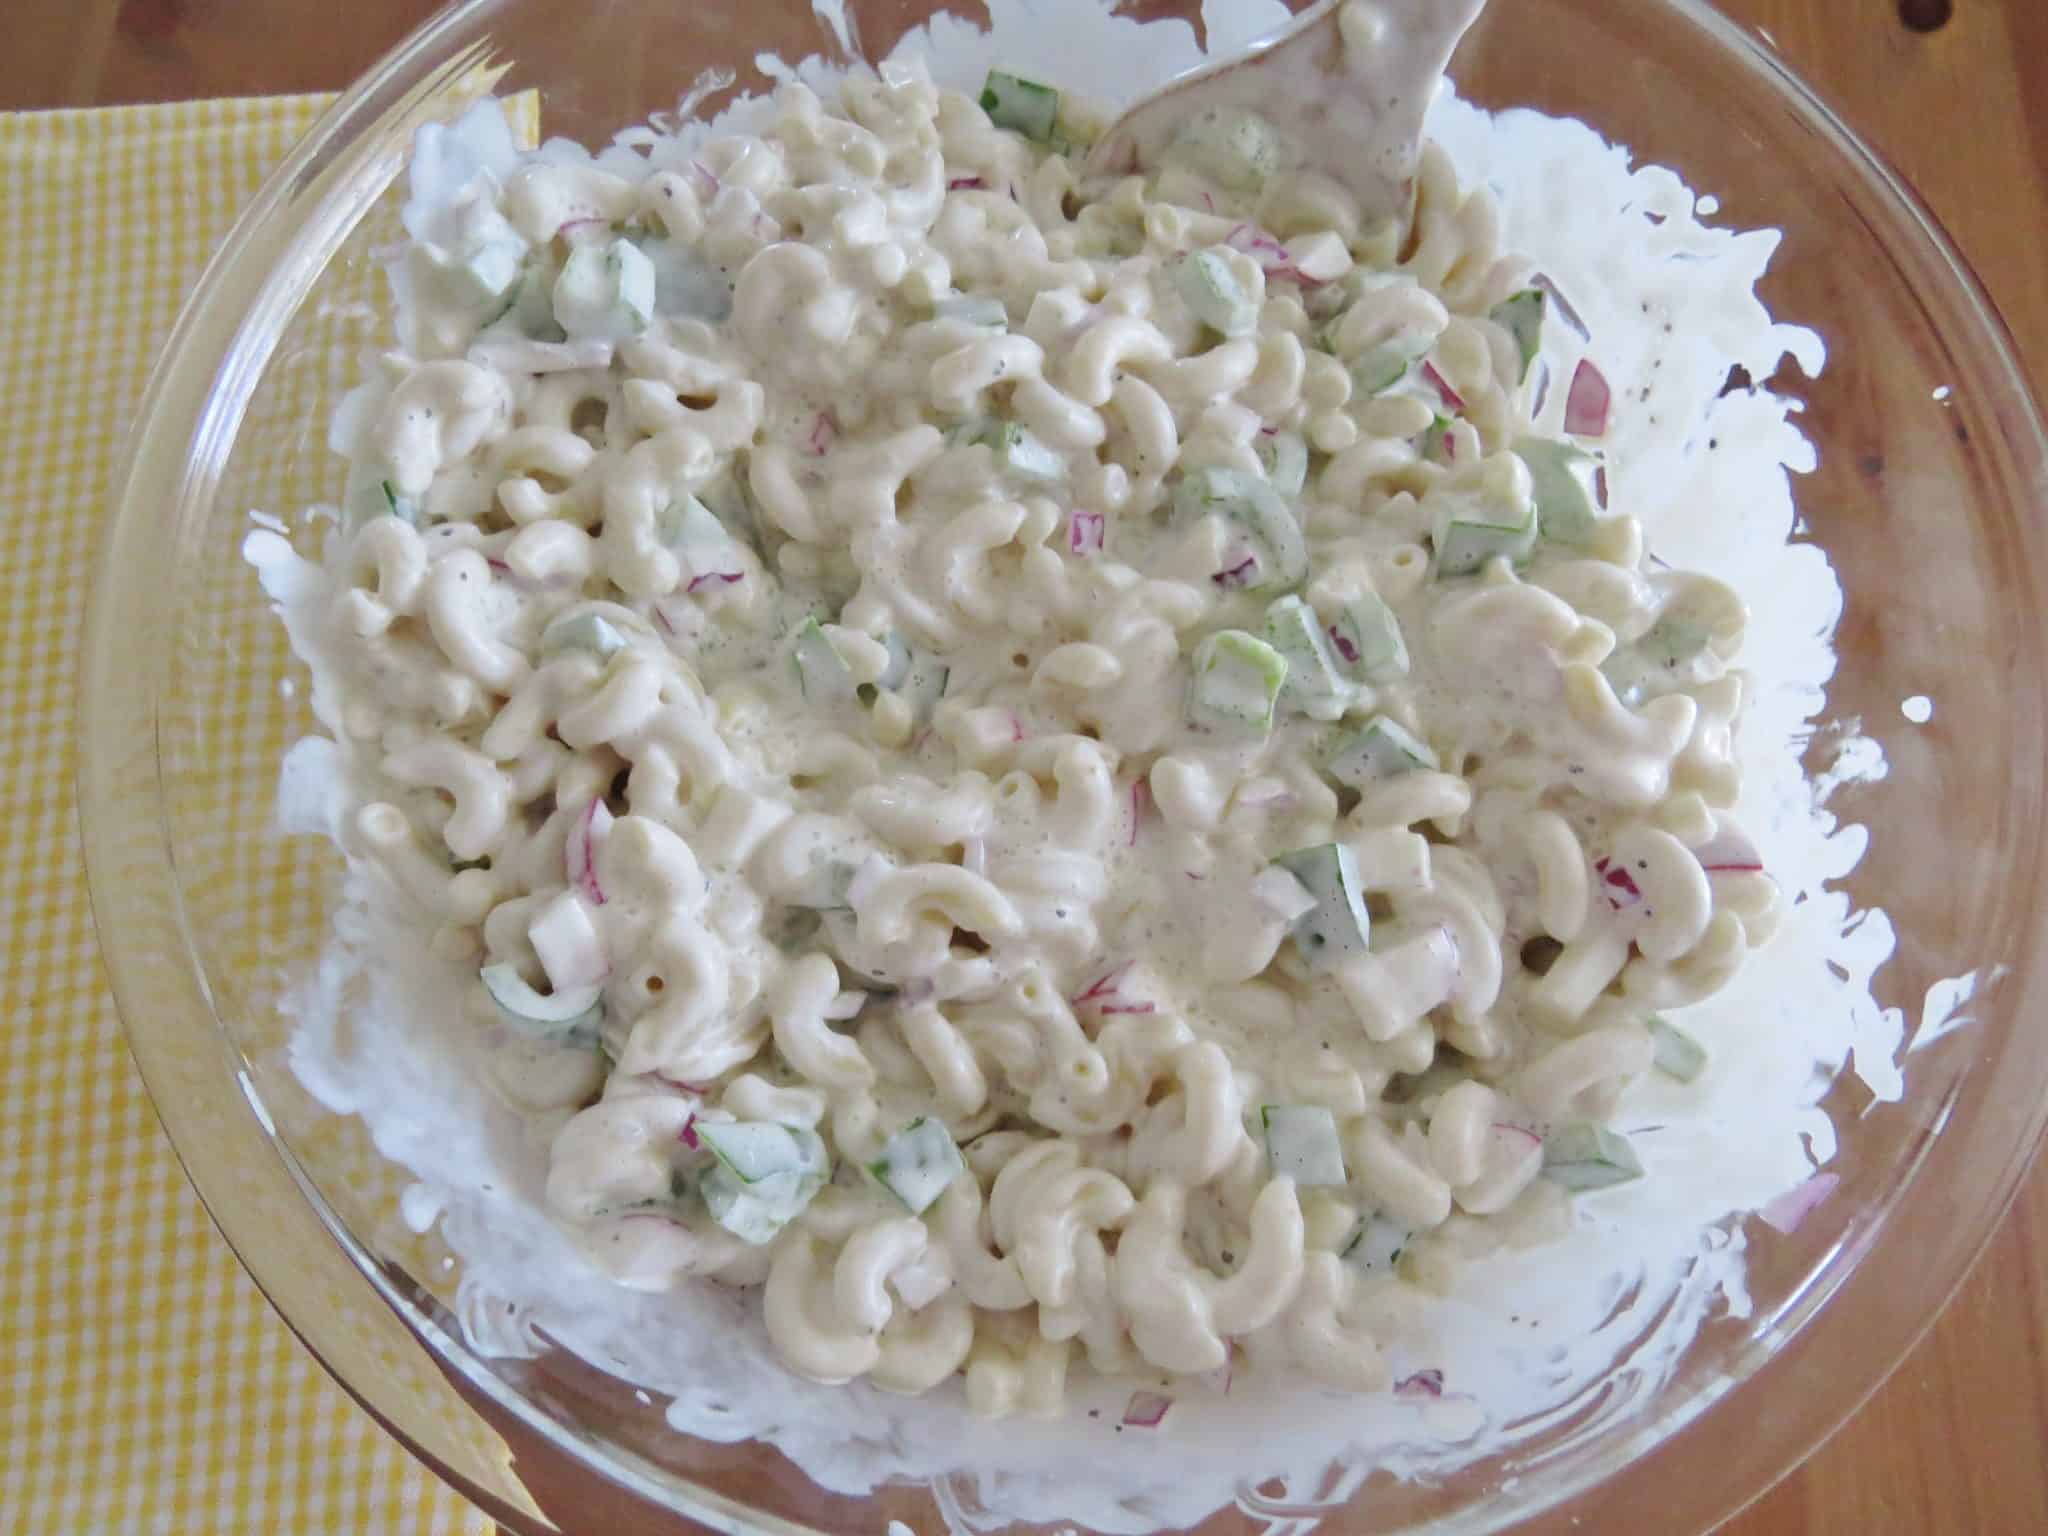 creamy macaroni salad in a bowl